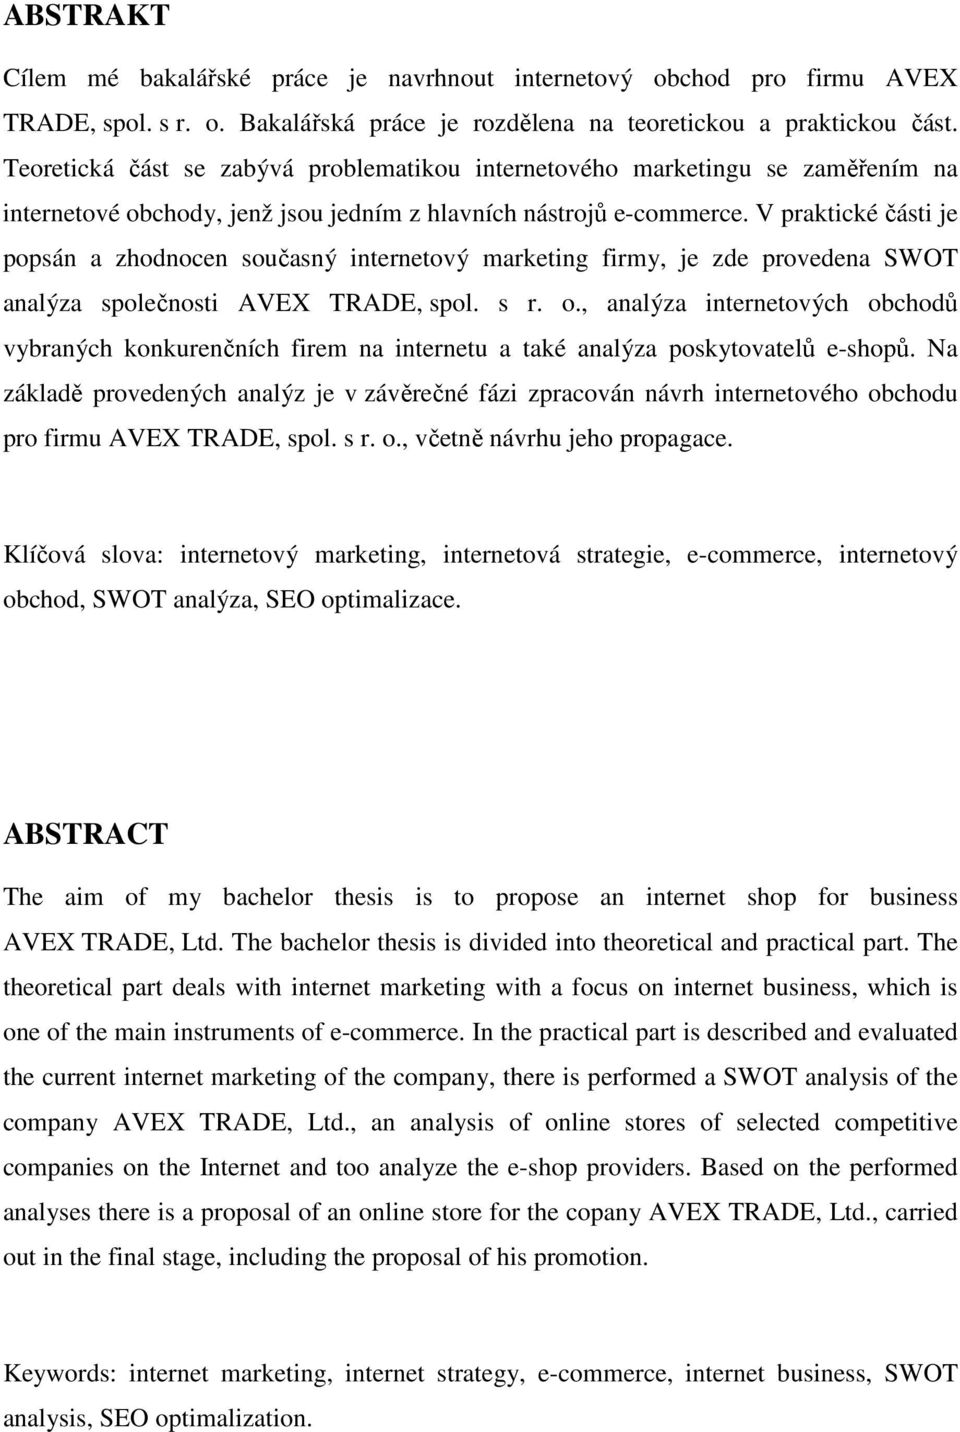 V praktické části je popsán a zhodnocen současný internetový marketing firmy, je zde provedena SWOT analýza společnosti AVEX TRADE, spol. s r. o.